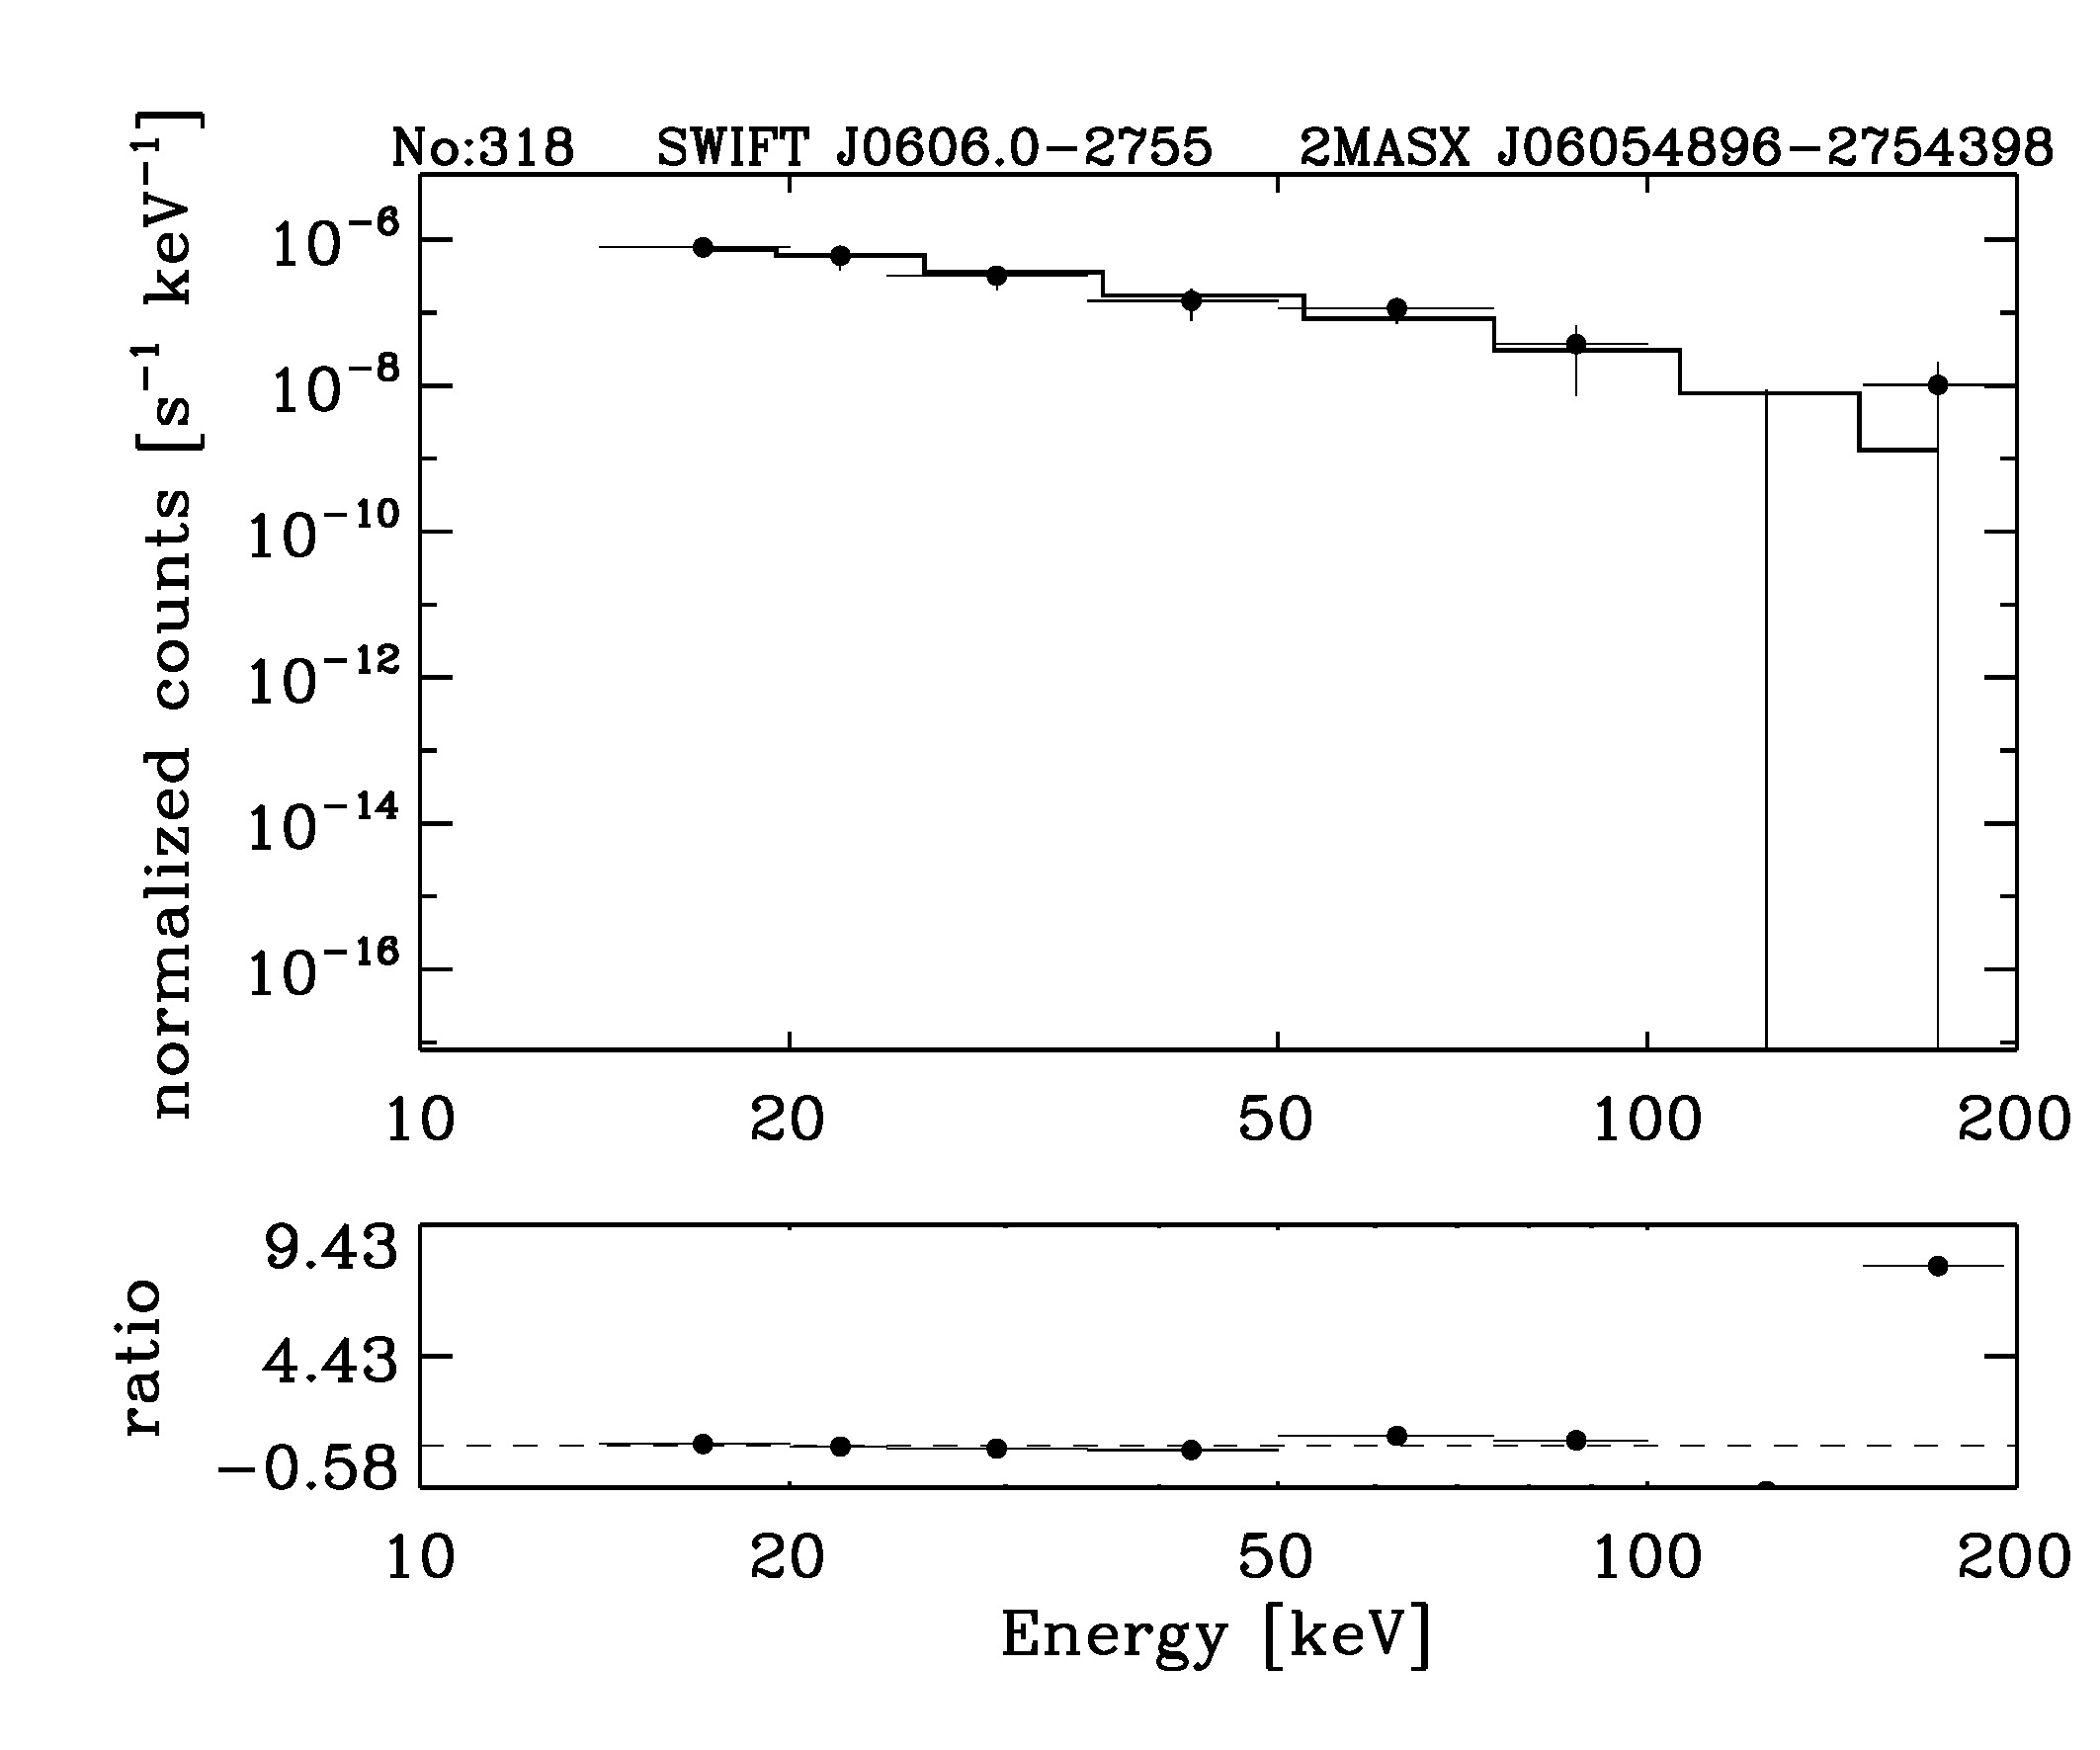 BAT Spectrum for SWIFT J0606.0-2755